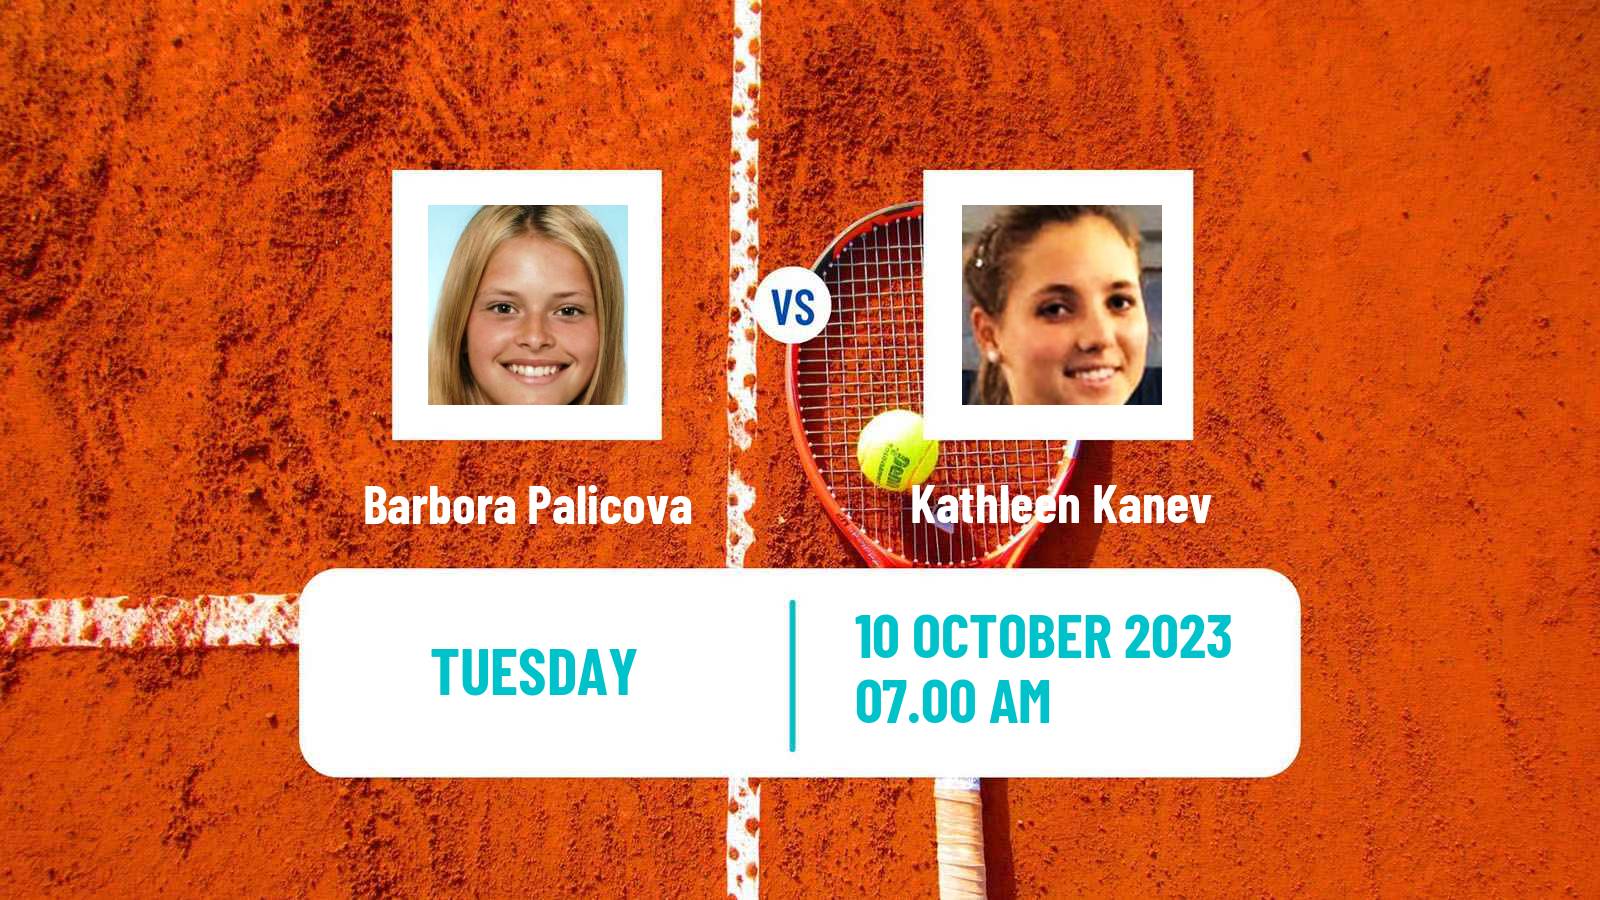 Tennis ITF W40 Quinta Do Lago Women 2023 Barbora Palicova - Kathleen Kanev